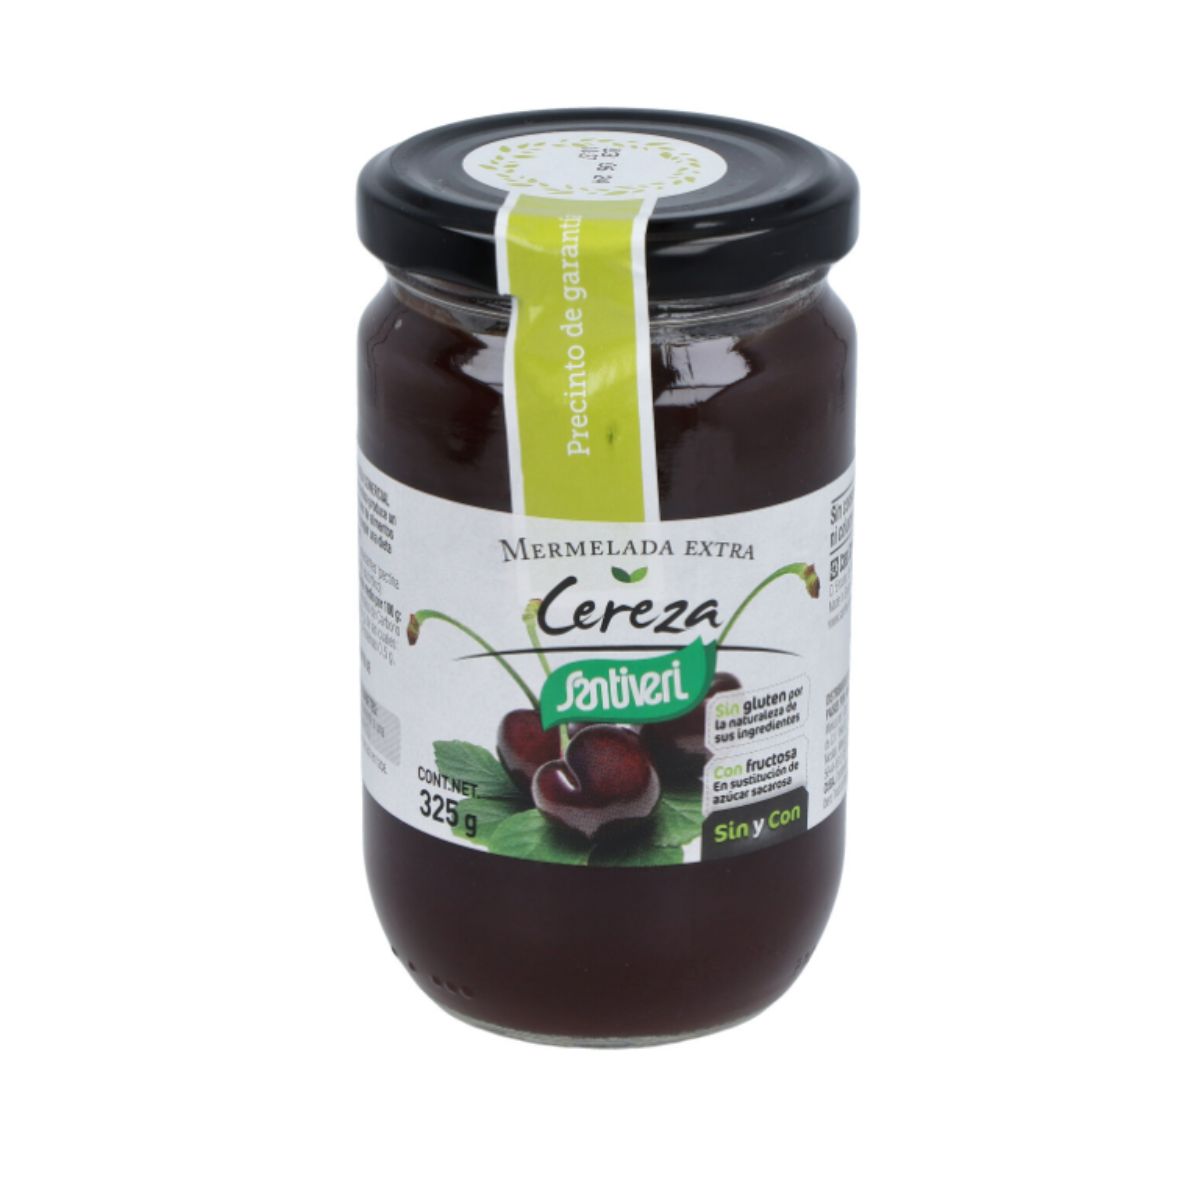 Mermelada Extra de Cereza con Fructosa 325 g